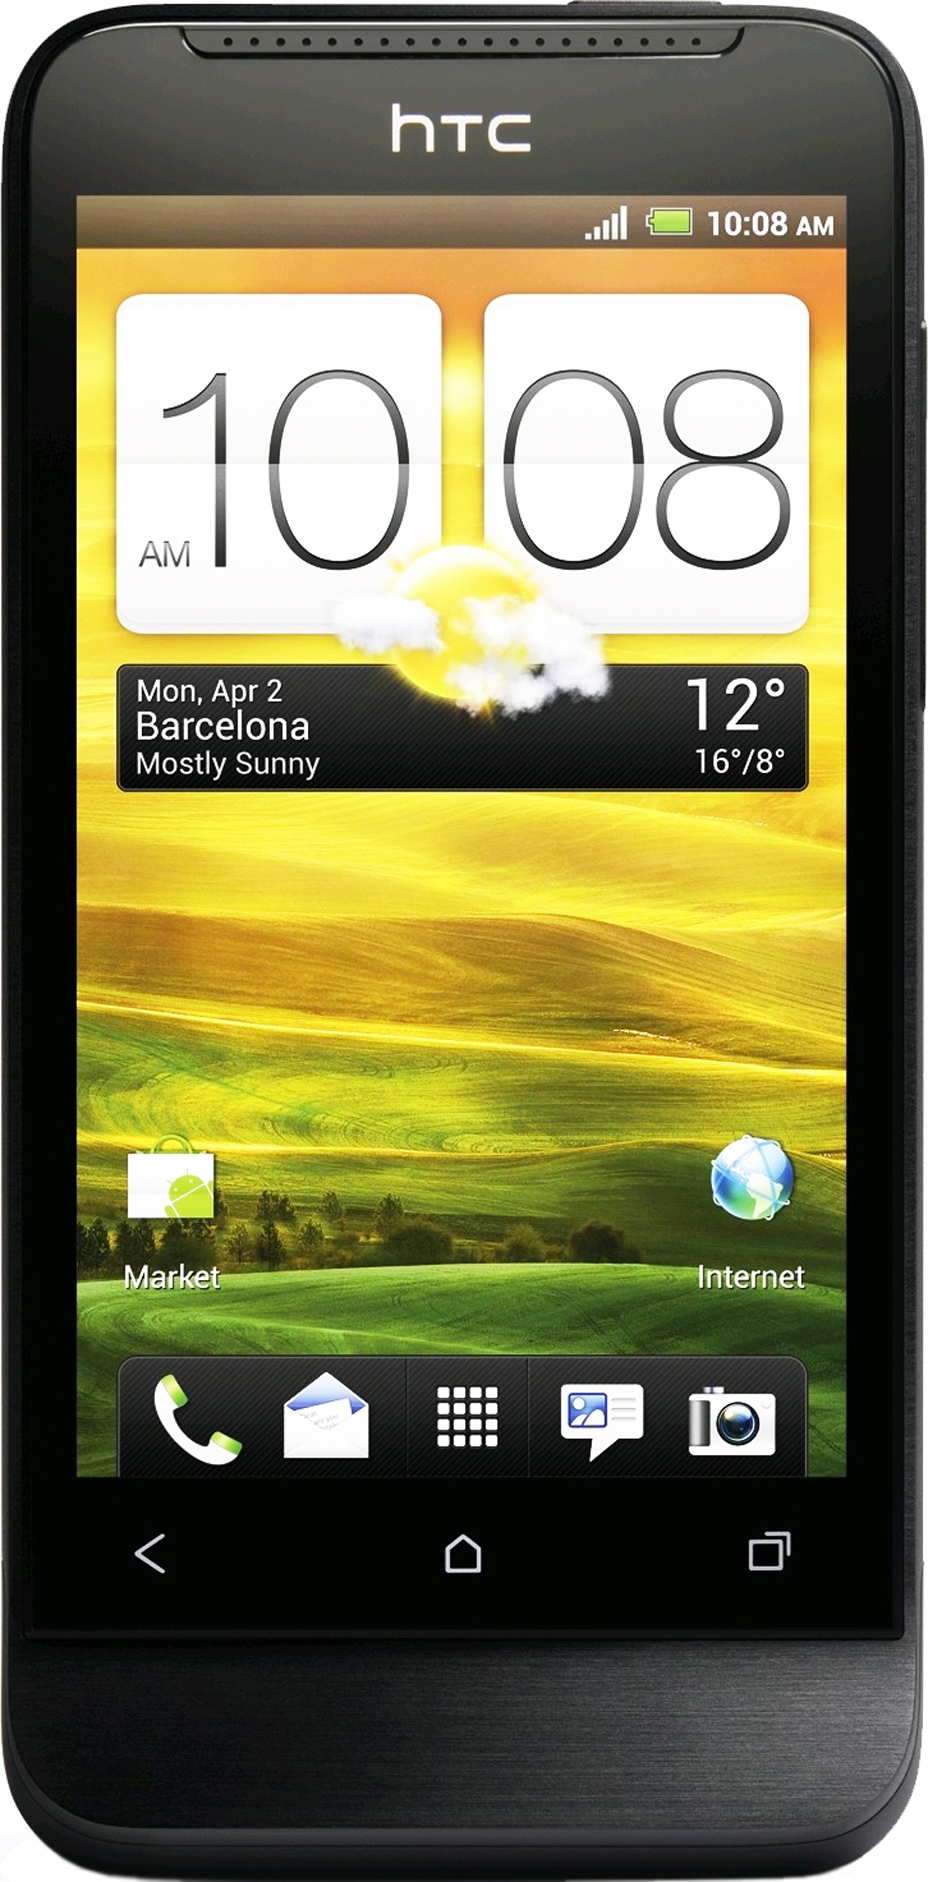 HTC One V (Black) - зображення 1